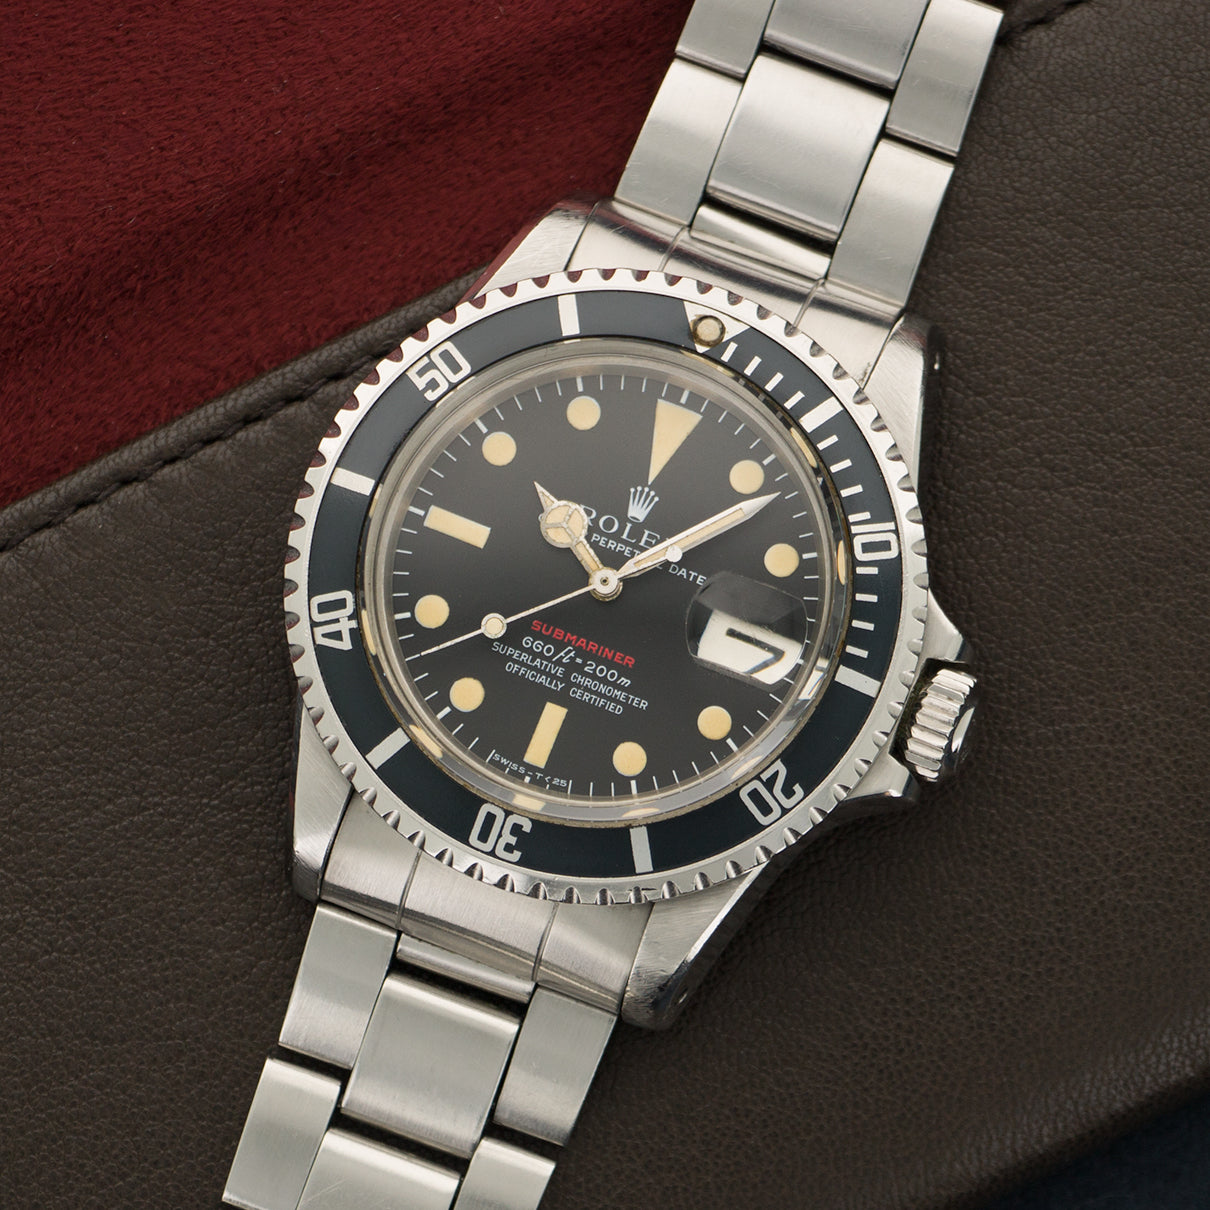 Rolex - Rolex Stainless Steel Red Submariner Watch Ref. 1680 - The Keystone Watches